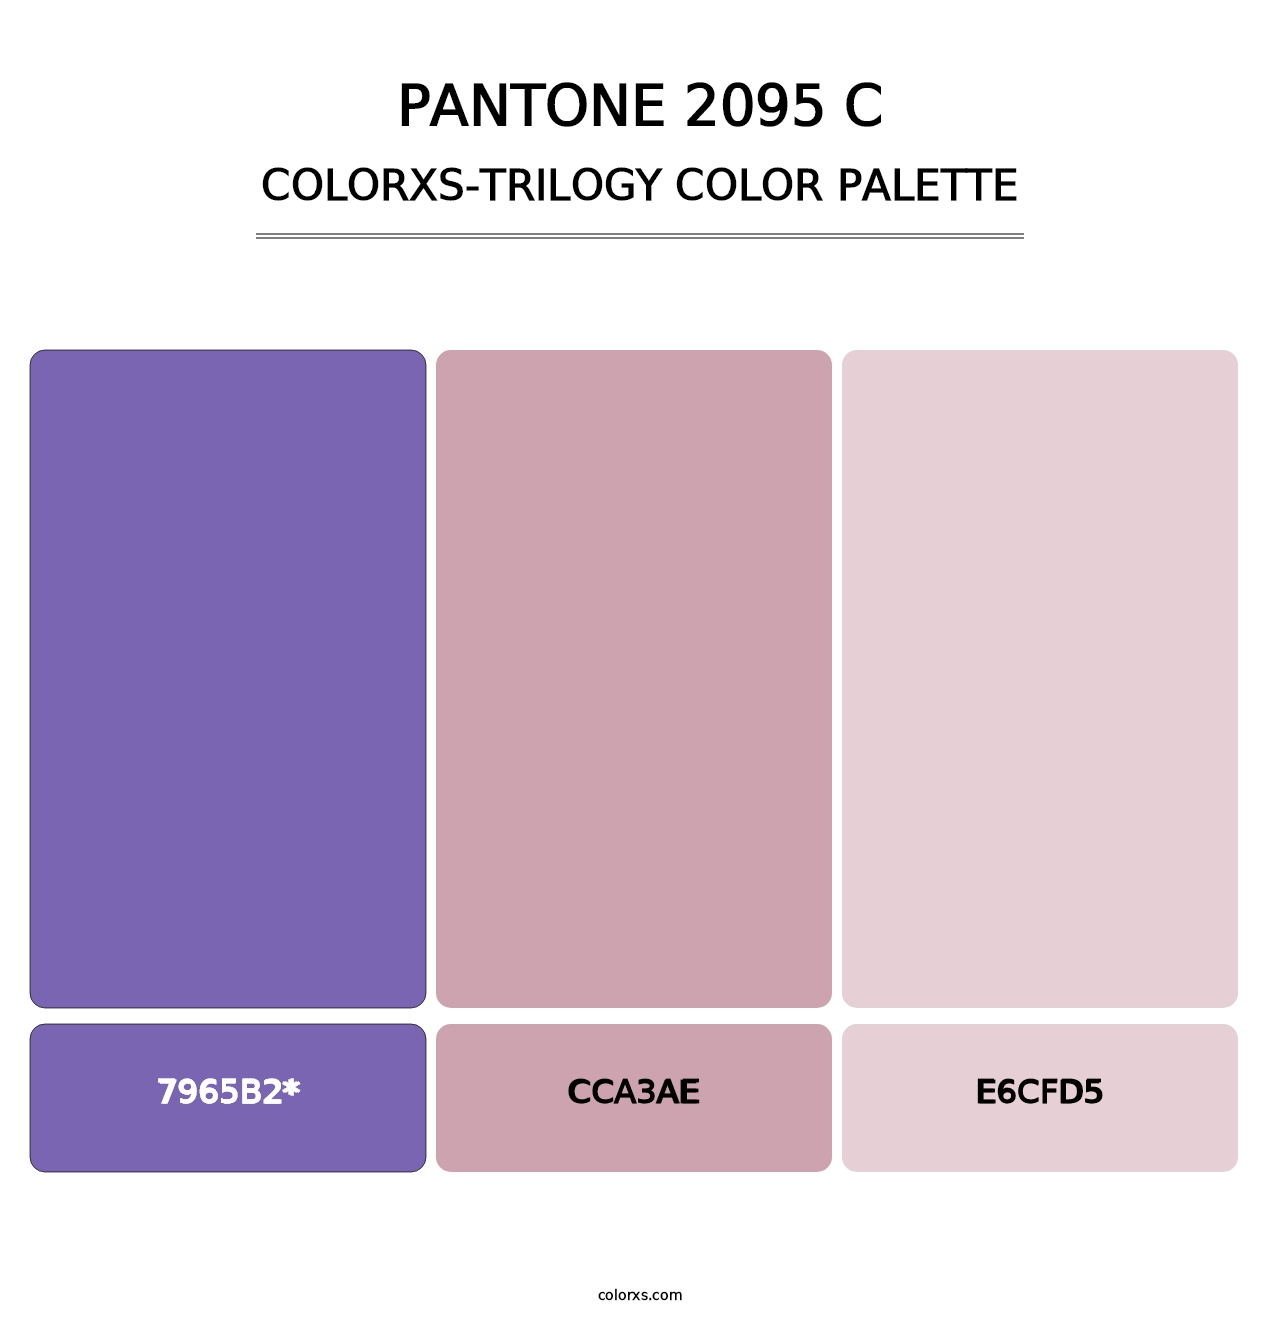 PANTONE 2095 C - Colorxs Trilogy Palette